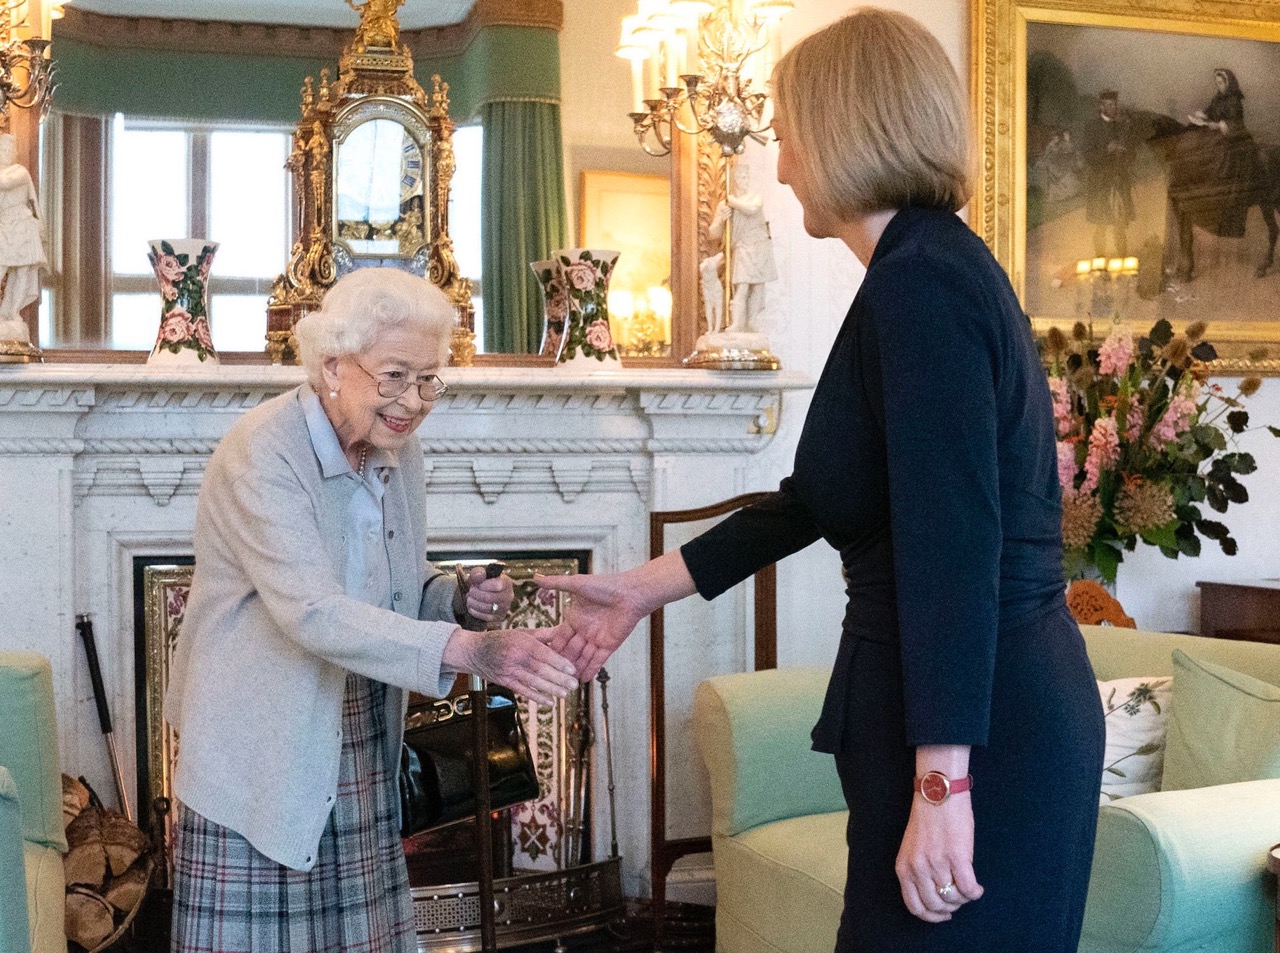 I. Erzsébet brit királynő (b) audiencián fogadja Liz Truss volt külügyminisztert, a Konzervatív Párt új vezetőjét a skóciai uralkodói rezidencián, a balmorali kastélyban 2022. szeptember 6-án. A 96 éves uralkodó Boris Johnson miniszterelnök távozása után hivatalosan megbízta Trusst a kormányalakítással. A 47 éves Truss az Egyesült Királyság 56. miniszterelnöke, egyben a harmadik női kormányfő Margaret Thatcher és Theresa May után.